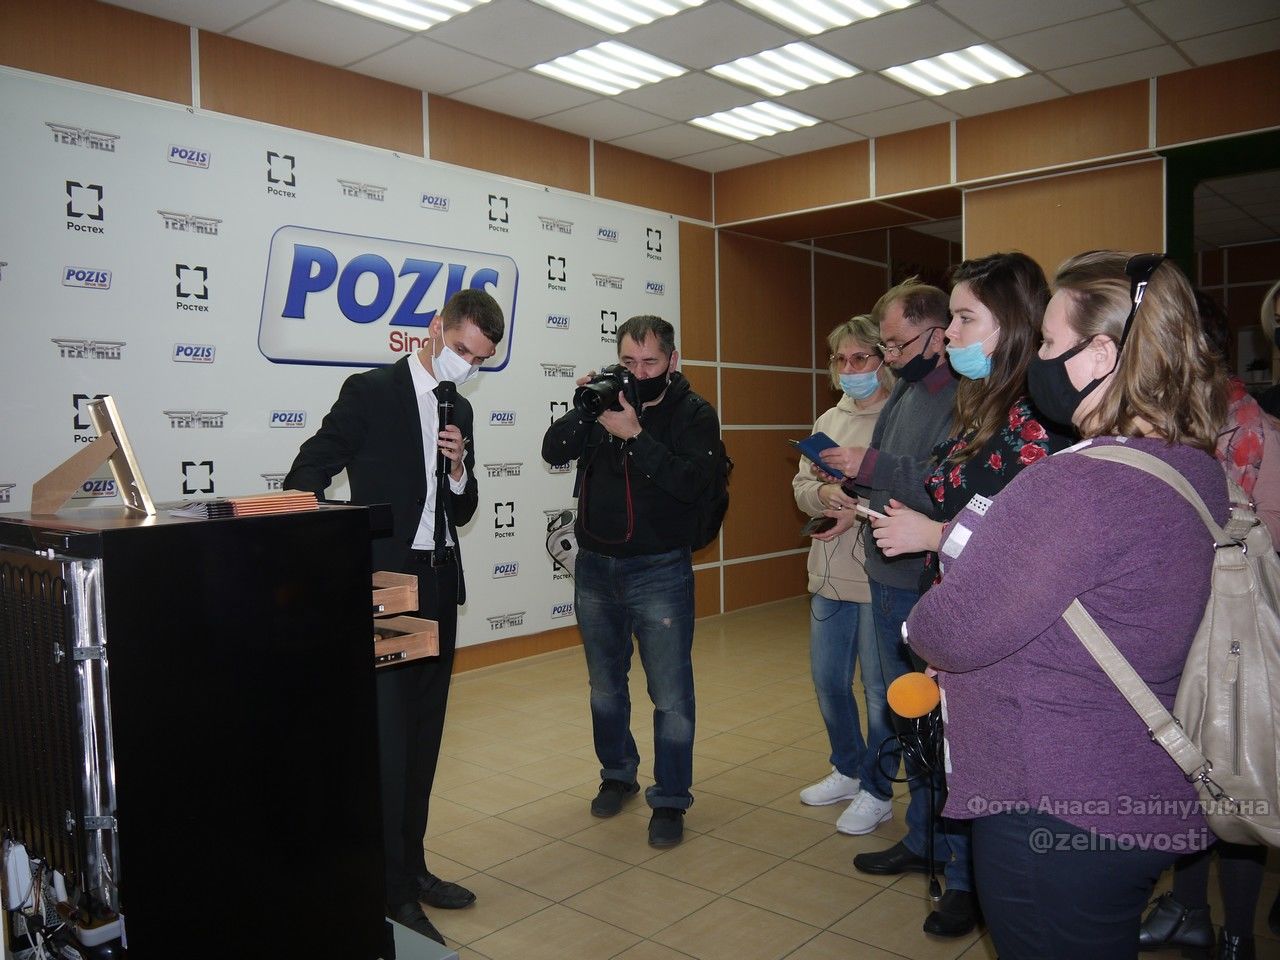 POZIS вновь удивил. Наши журналисты побывали в пресс-туре и ознакомились с новой продукцией градообразующего предприятия